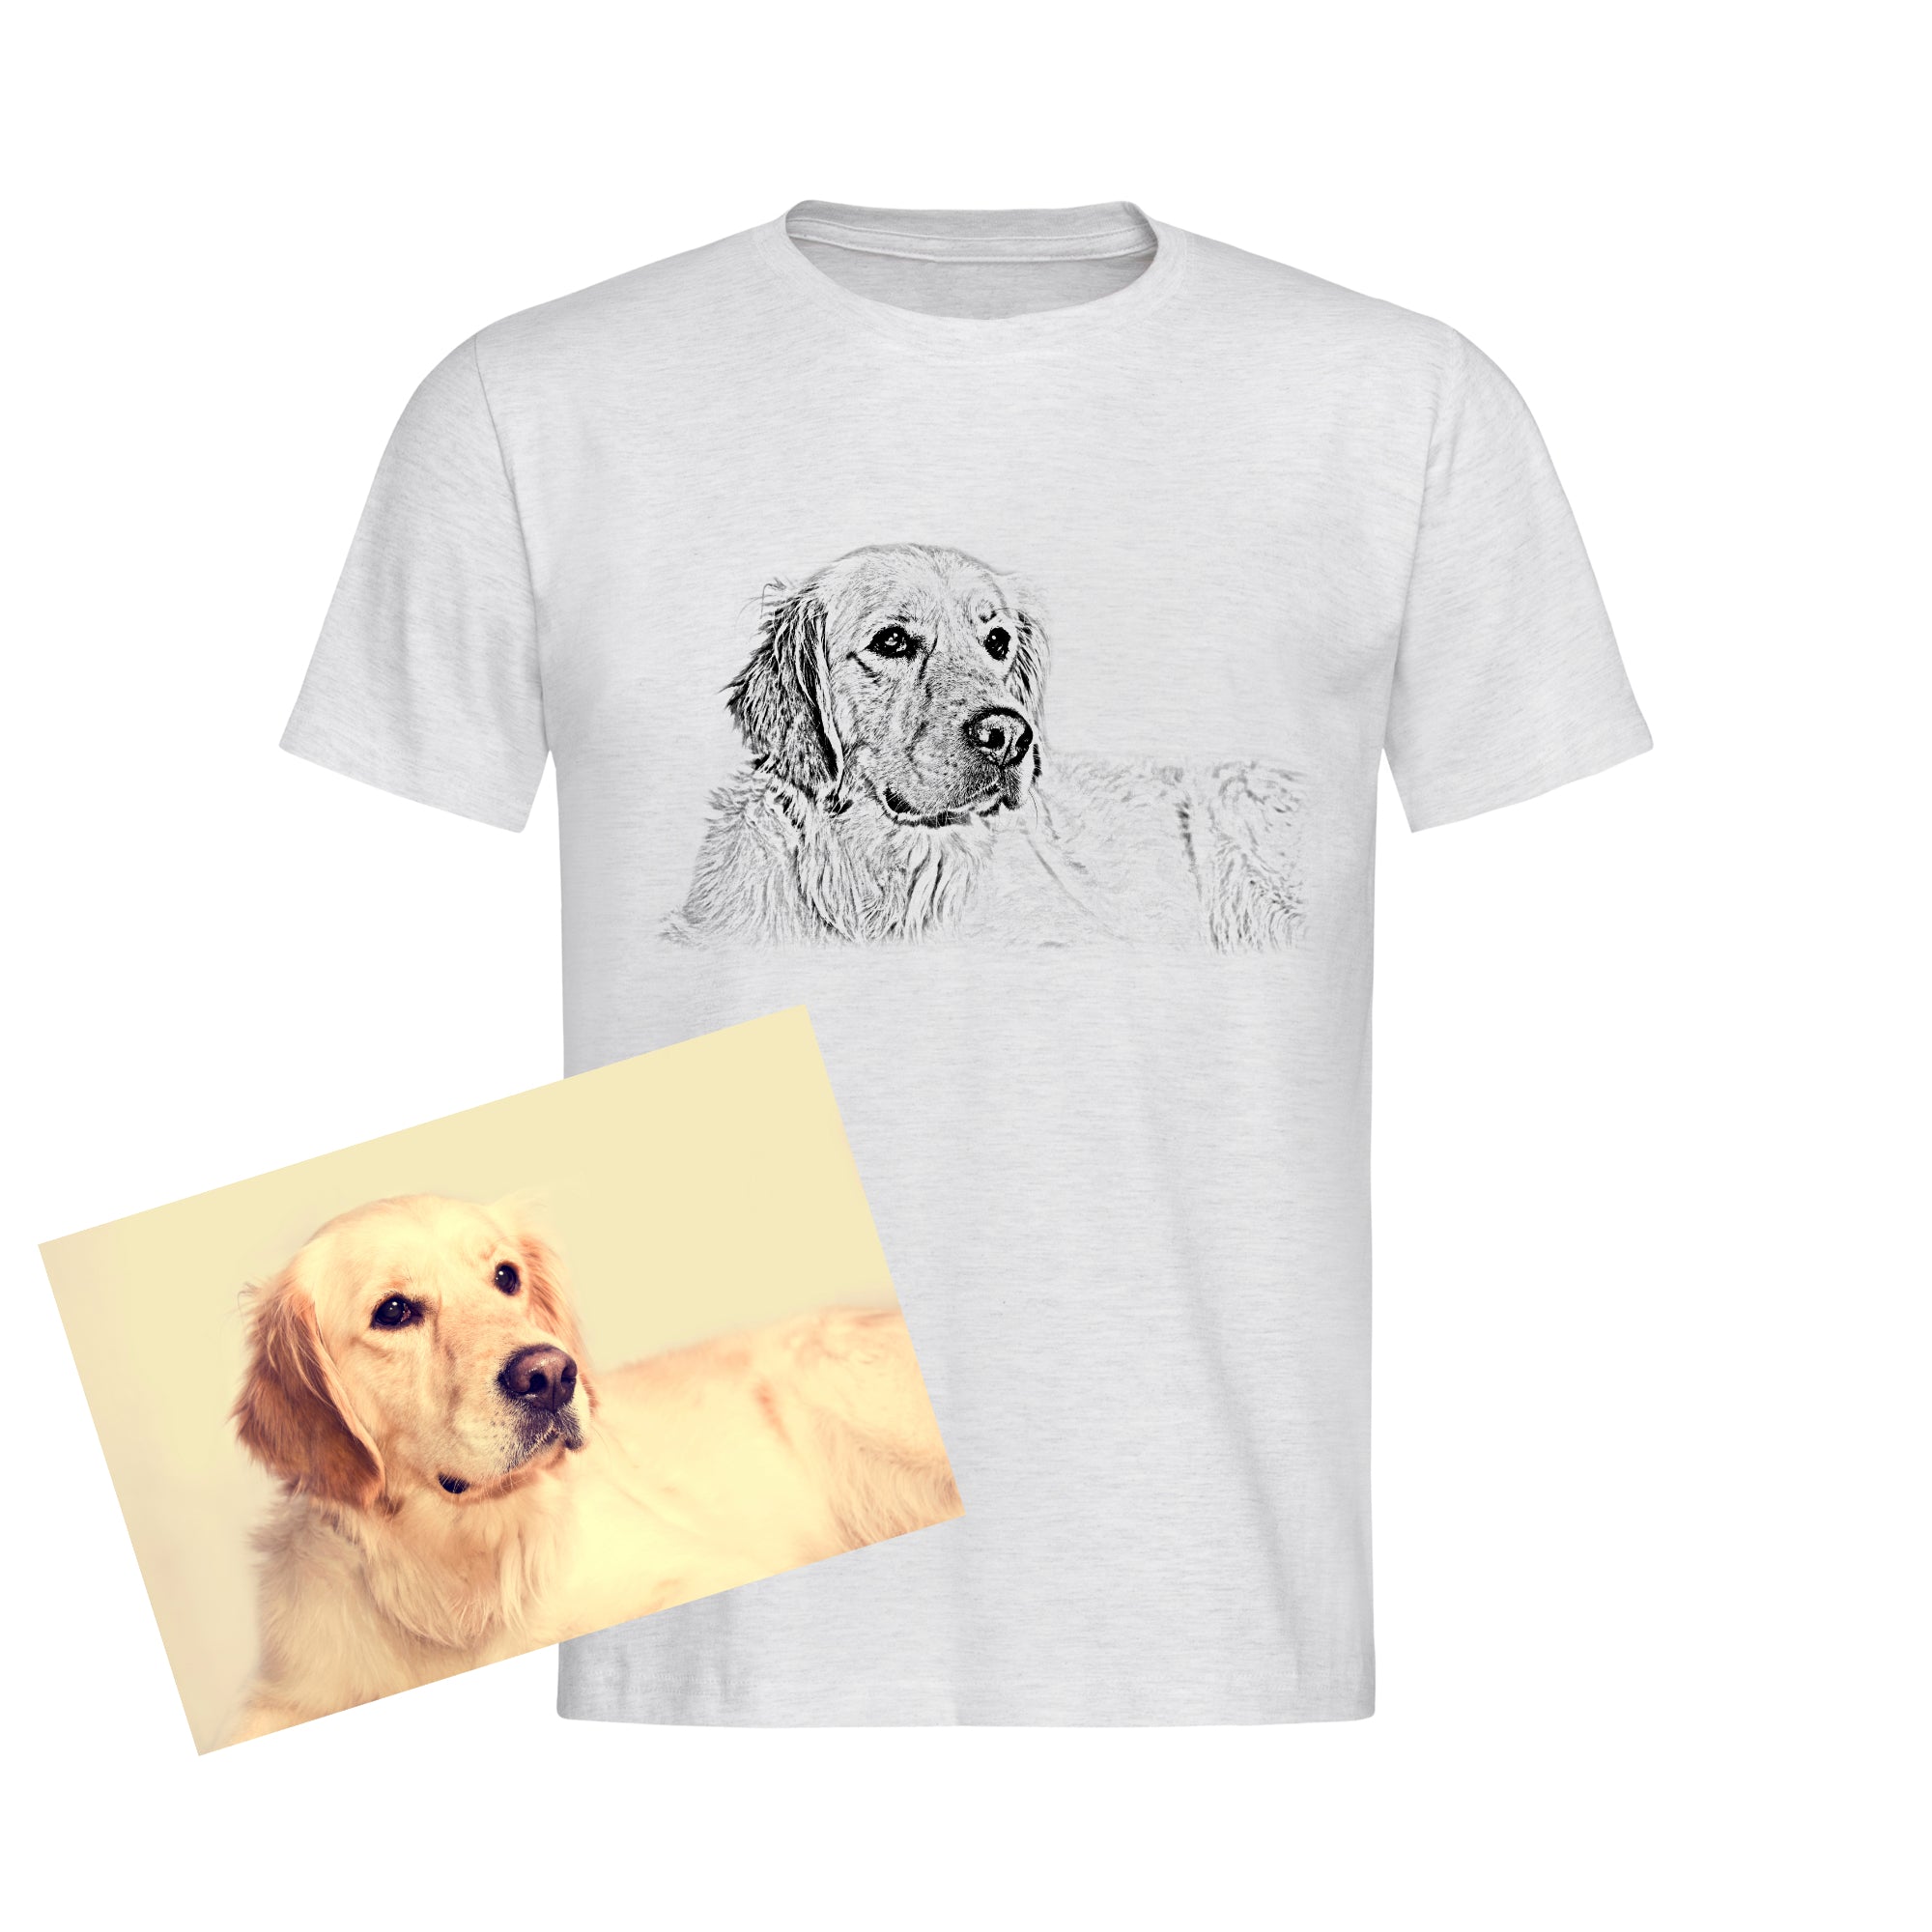 Dein Foto als Zeichnung digital Porträt - künstlerische Bleistiftzeichnung (digital Artwork) - Fotogeschenk Kinder T-Shirt - Familie, Freunde, Haustiere